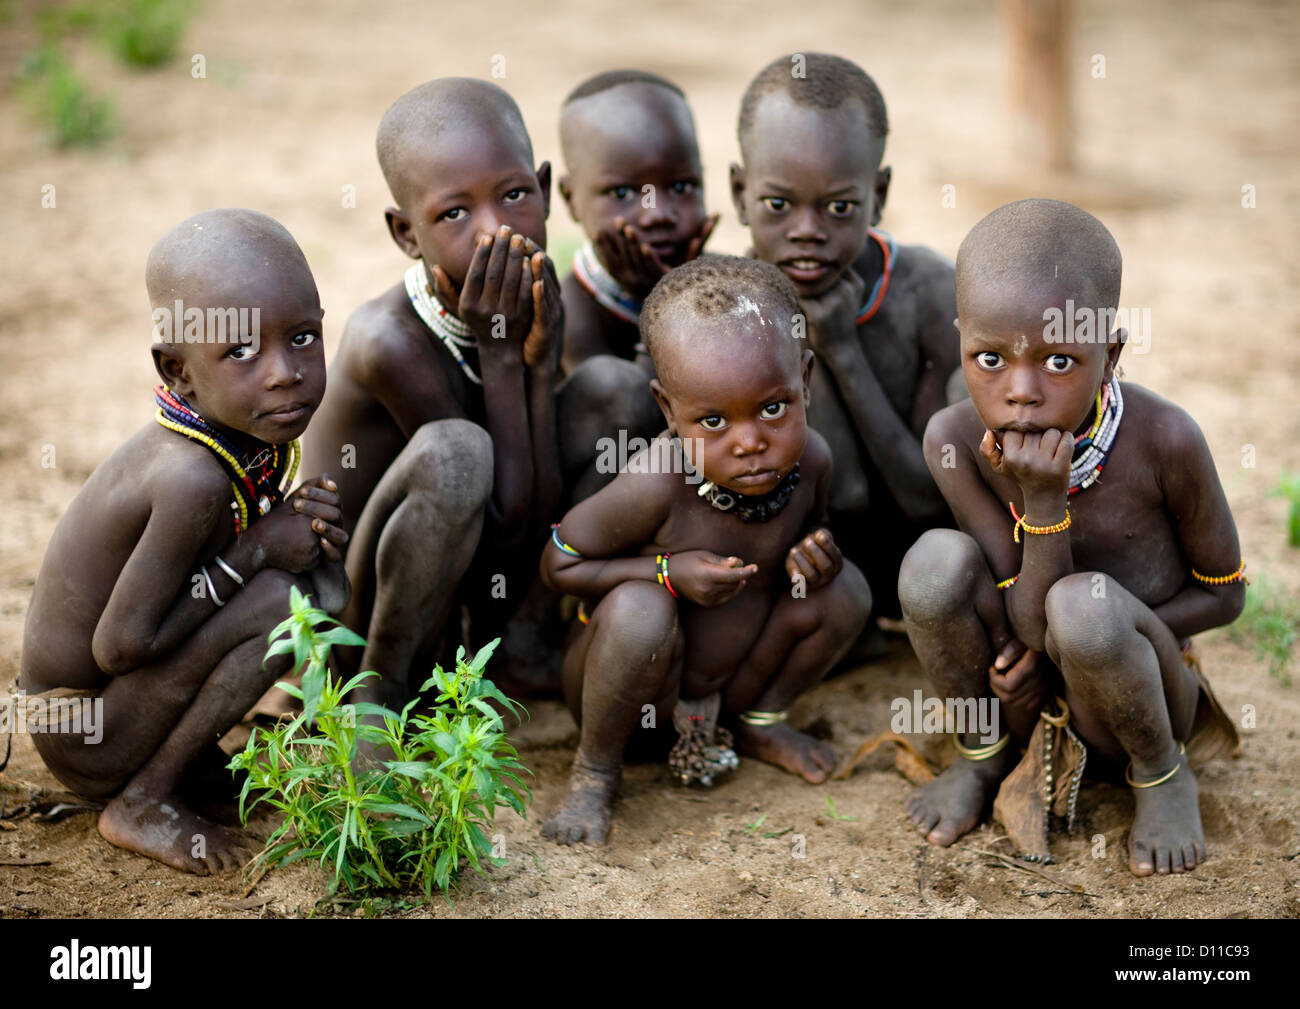 grupo-de-tribu-karo-kids-en-cuclillas-y-mirando-timidamente-en-la-camara-korcho-village-etiopia-d11c93.jpg